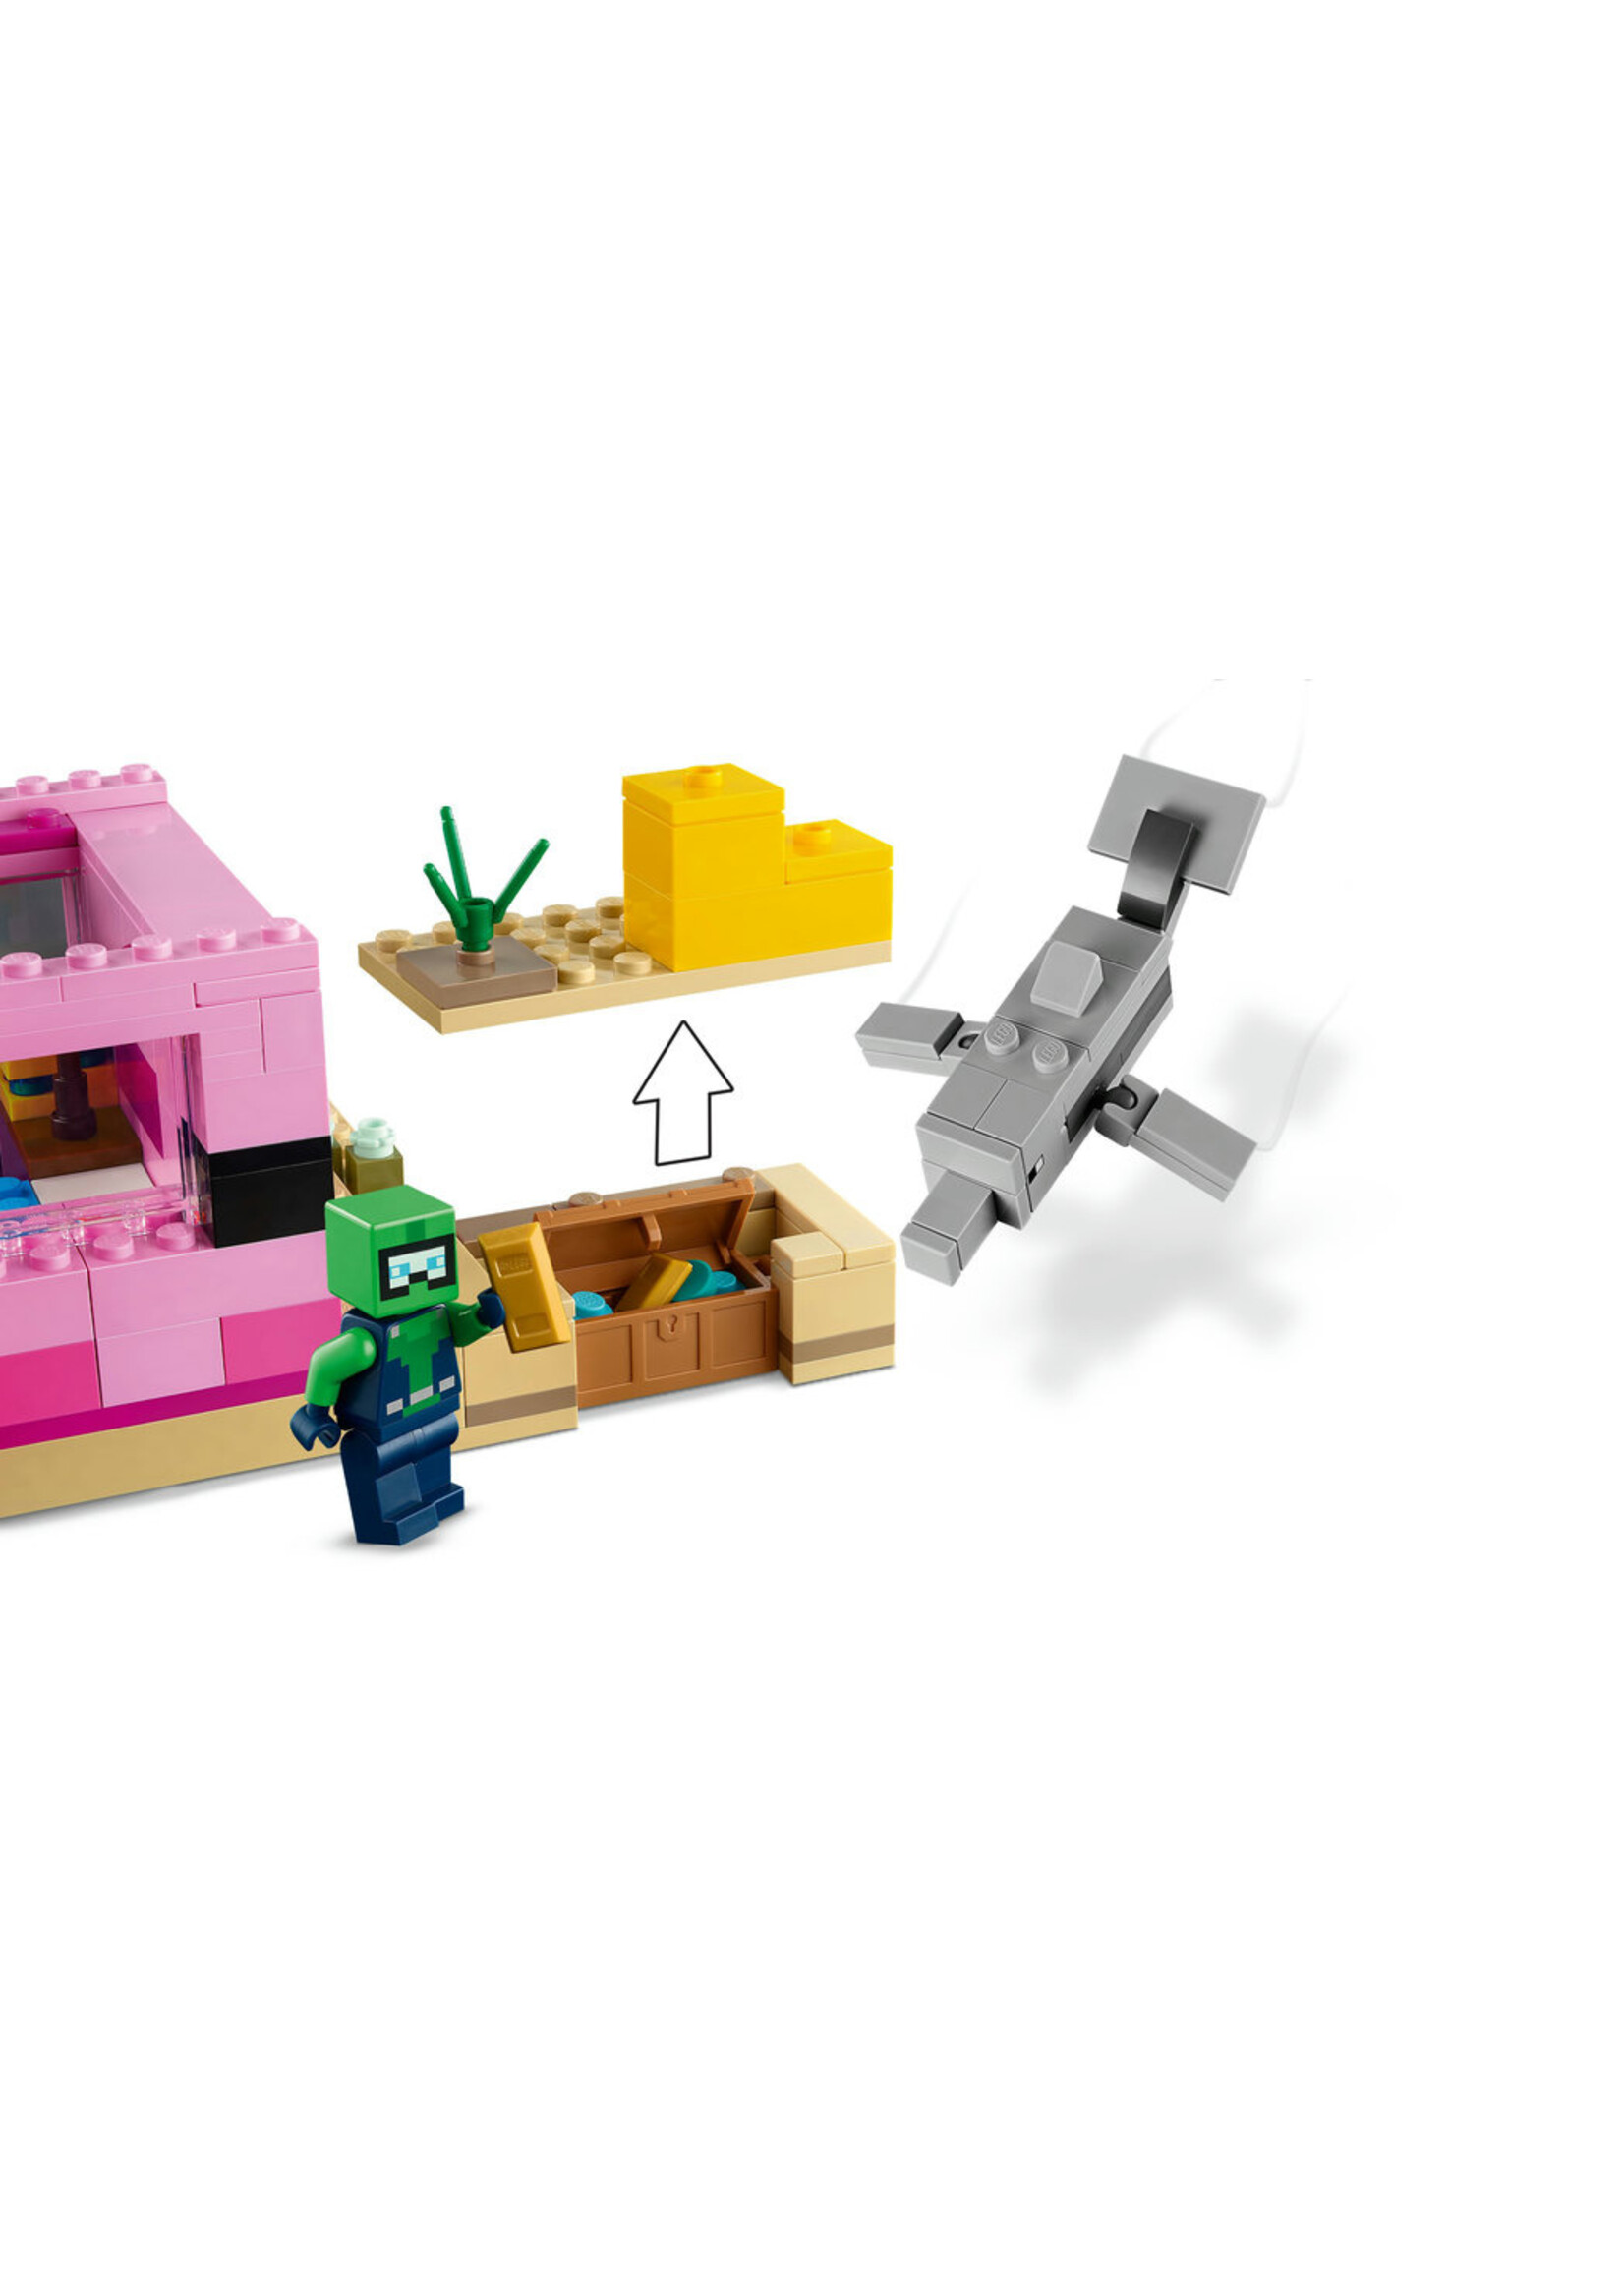 LEGO® Minecraft® 21247 A Casa de Axolotl